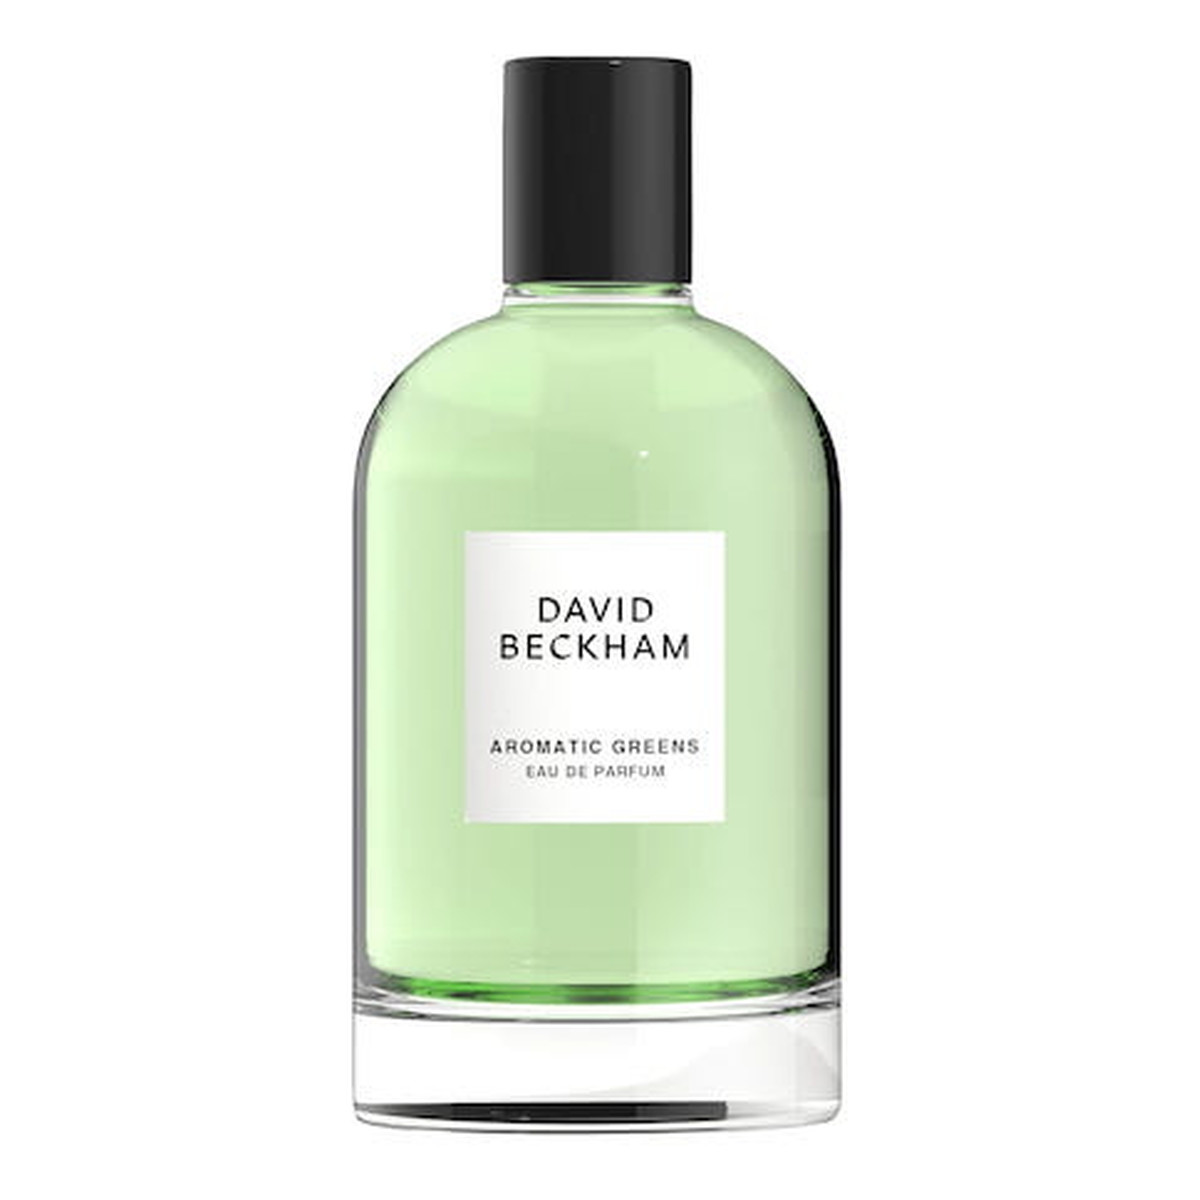 David Beckham Aromatic Greens Woda perfumowana spray 100ml